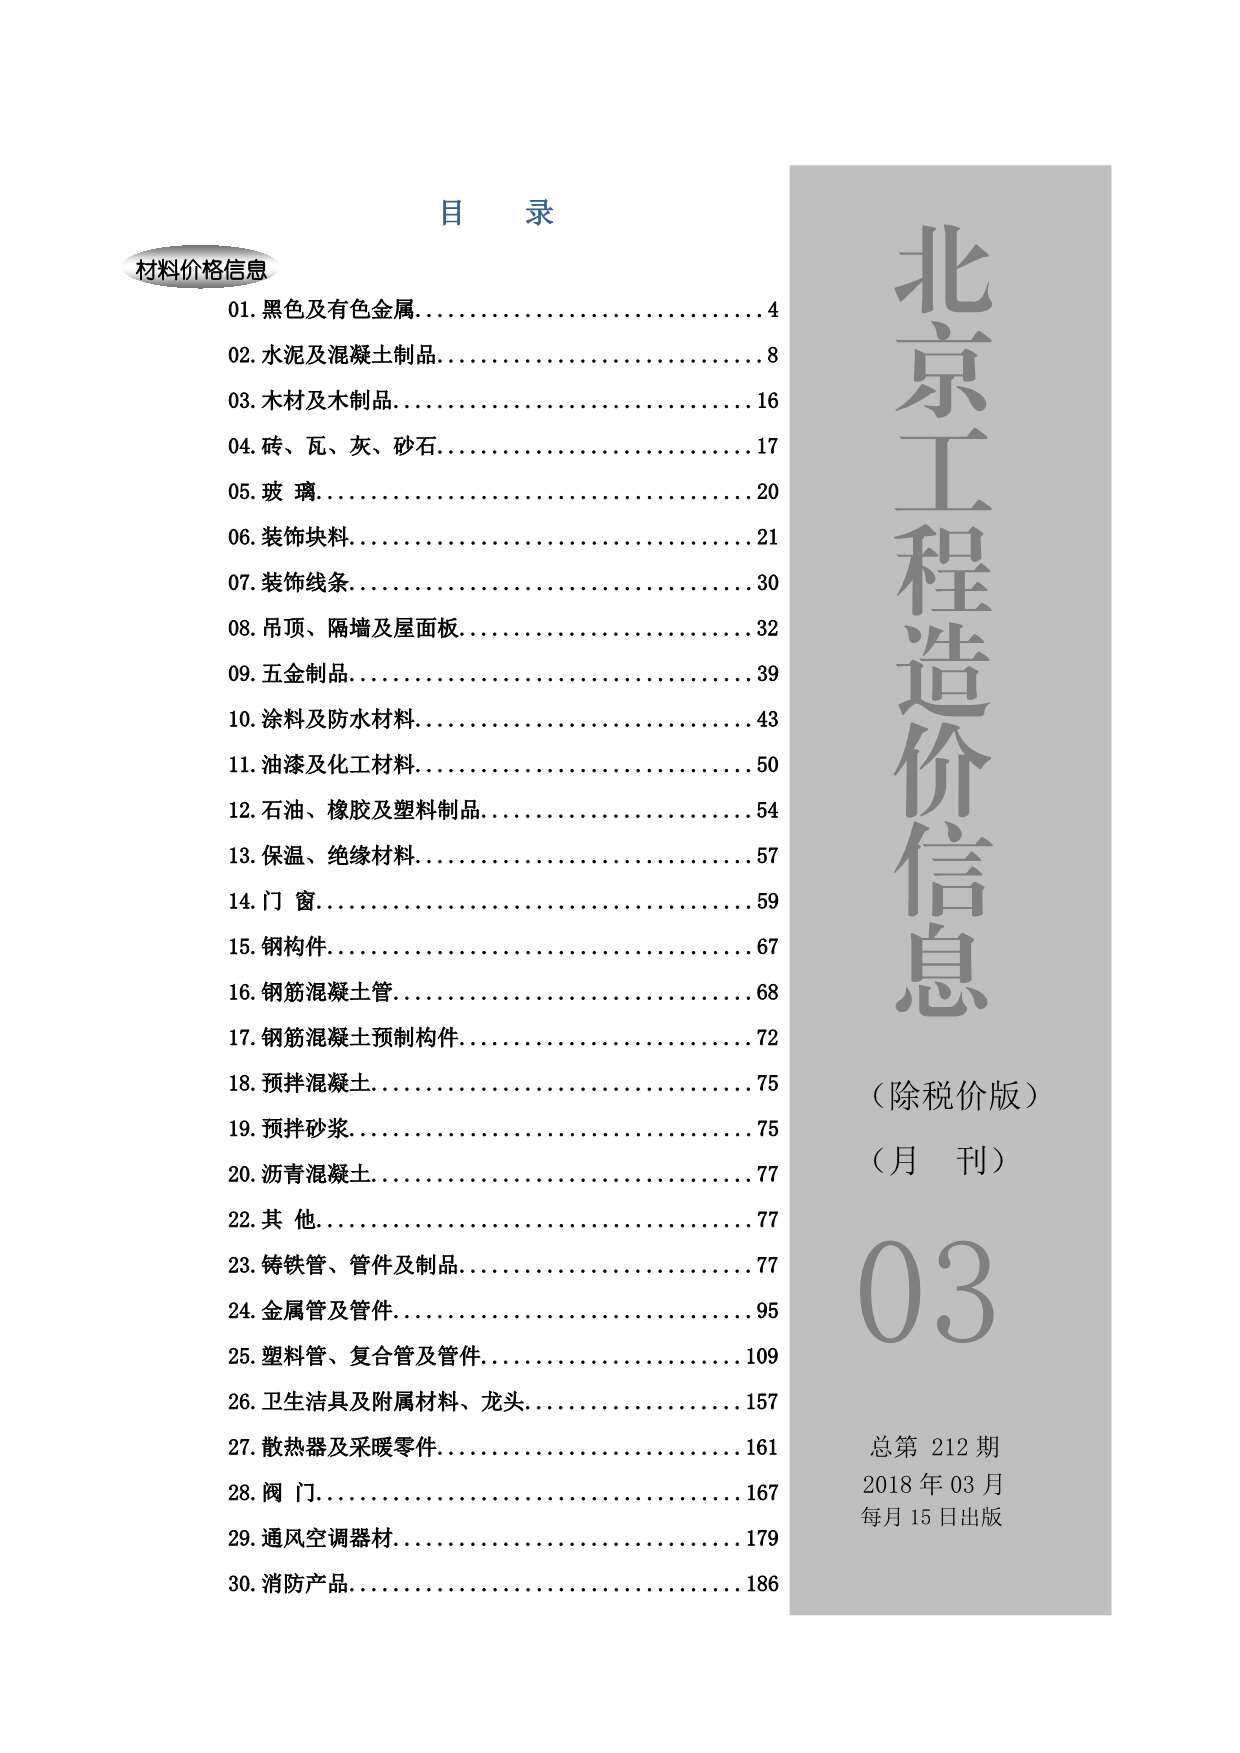 2018年3期北京市除税价版工程造价信息期刊